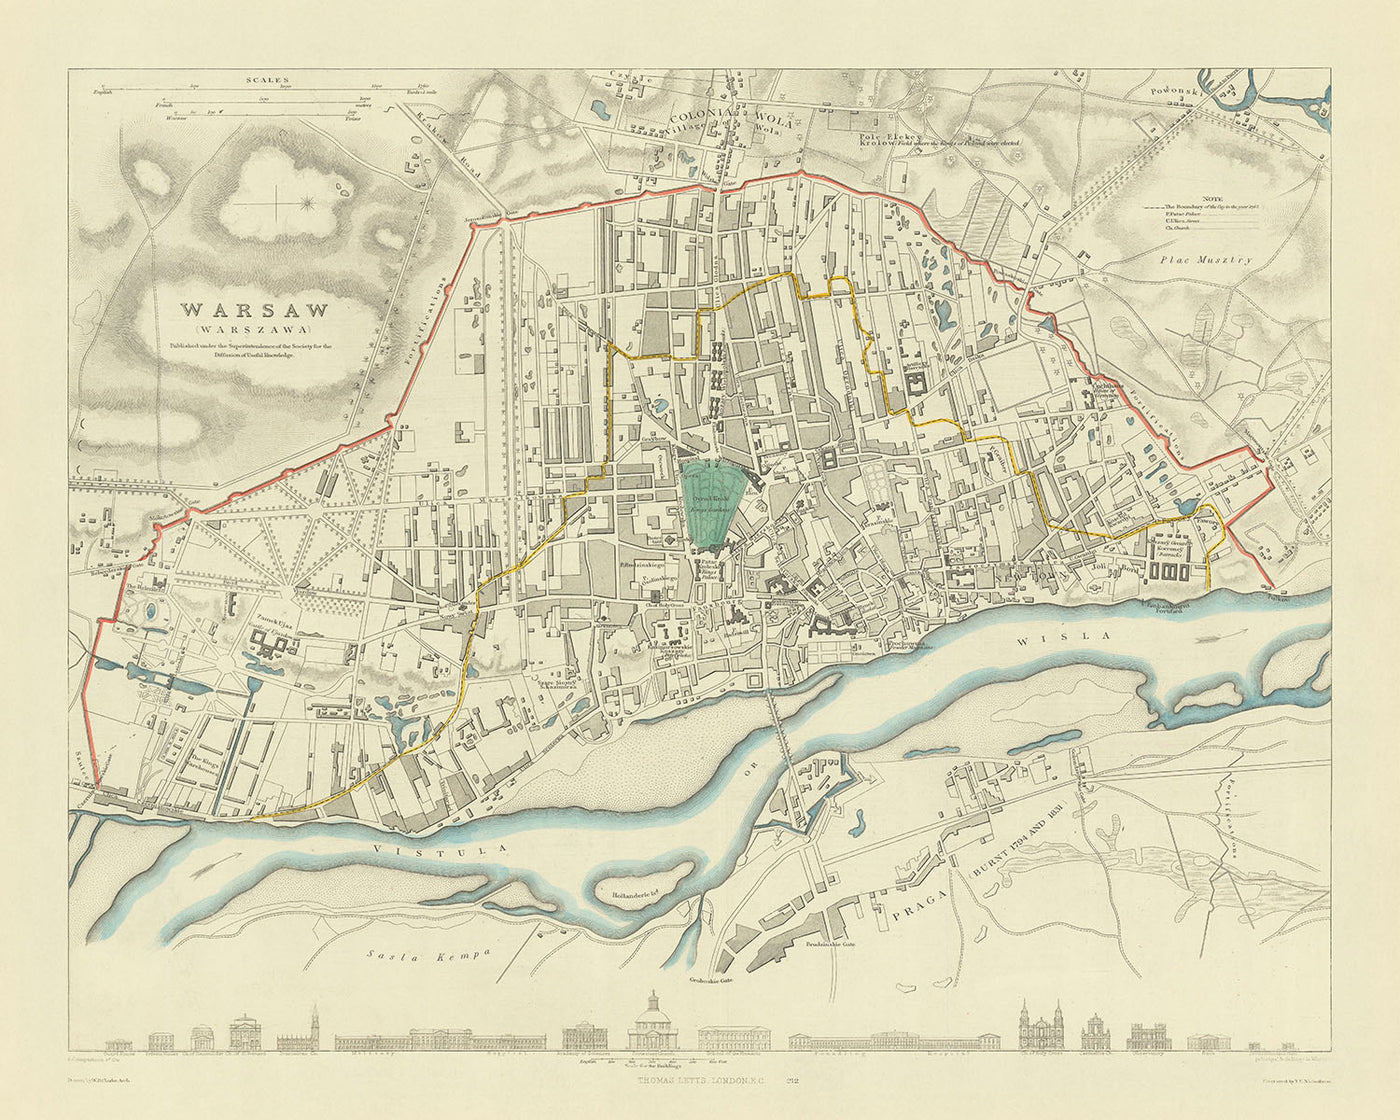 Alte Karte von Warschau, 1870: Weichsel, Altstadt, Łazienki-Park, Königsschloss, Museum des Warschauer Aufstands